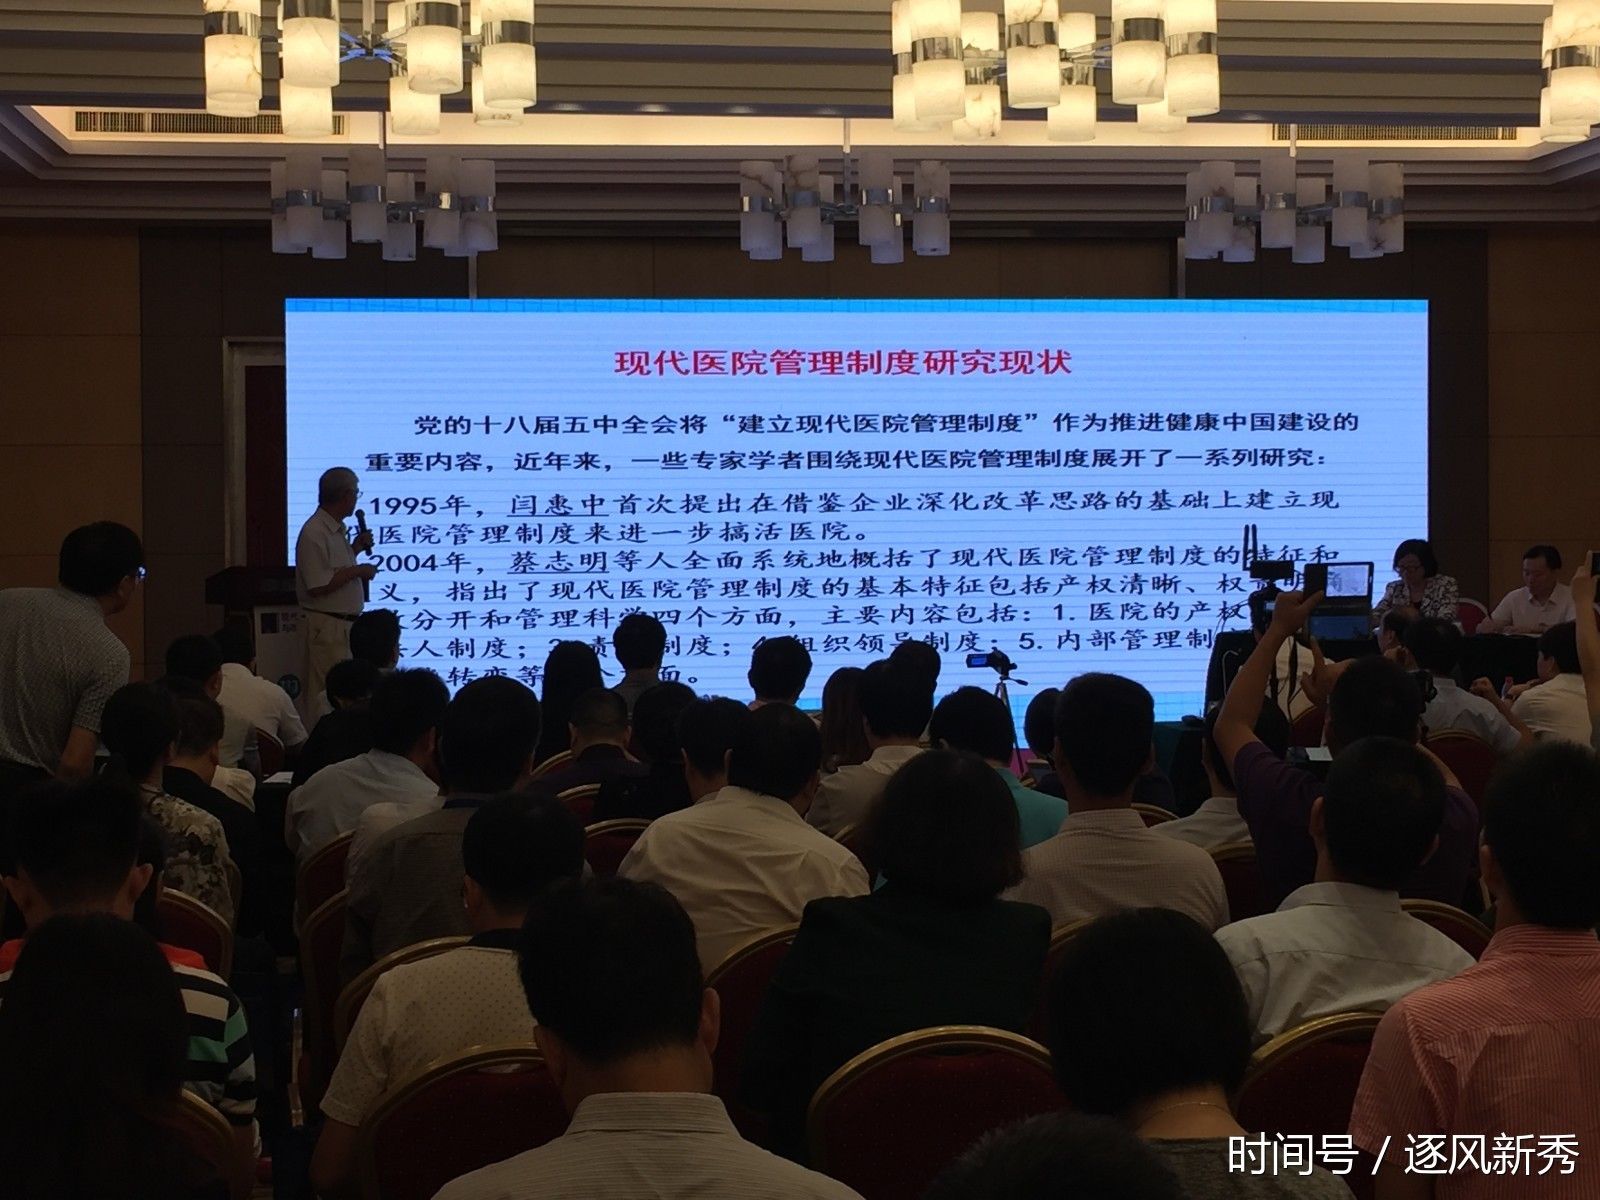 2017 中南六省(区)现代医院管理学术交流大会